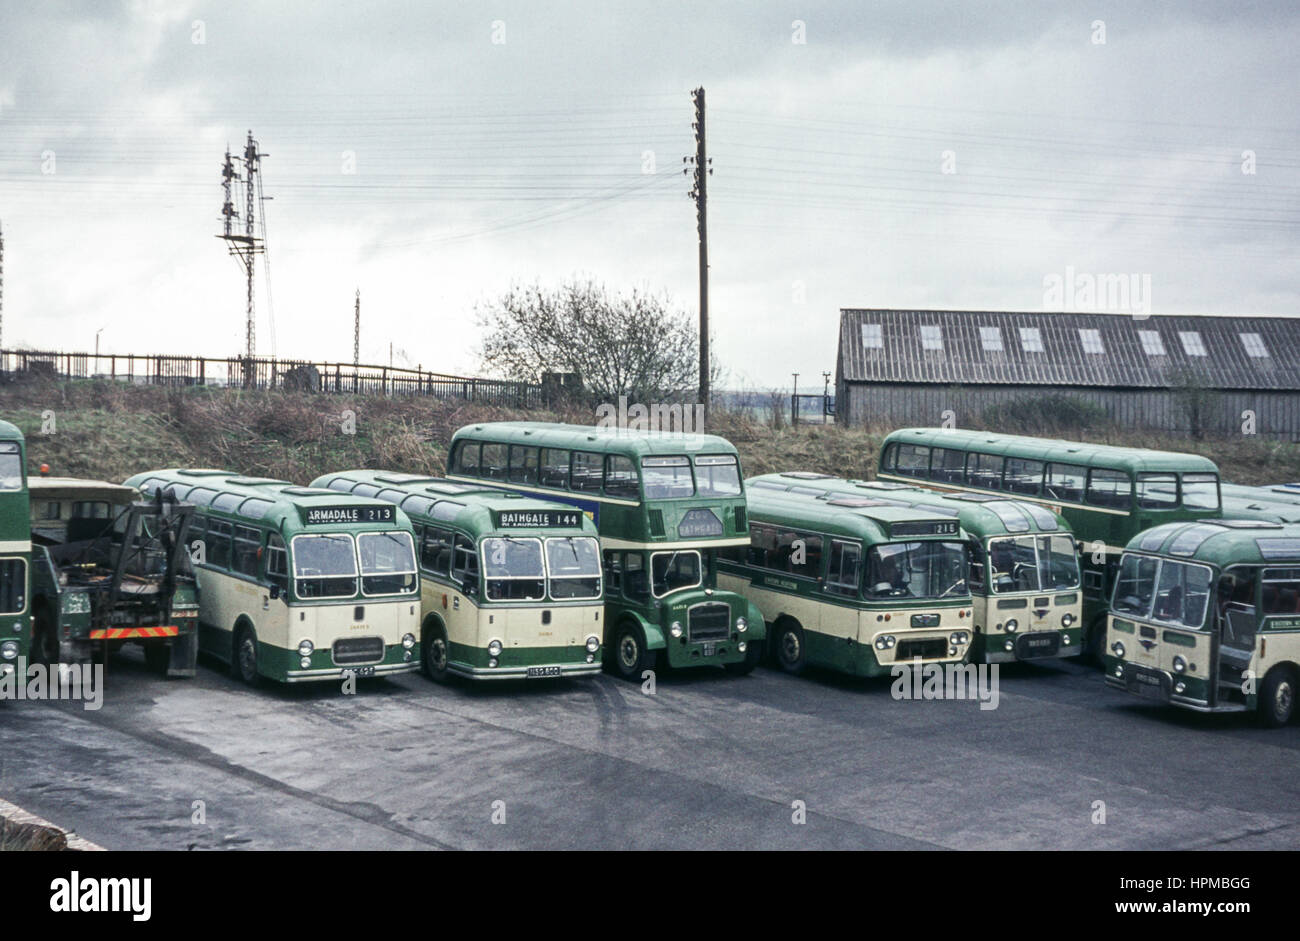 Escocia, Reino Unido - 1973: Vintage imagen de autobuses en autobús patio. Con los autobuses de la flota escocesa oriental incluidos los autocares MW6G/ECW A625 (número de registro 625) y RSC LS6G/ECW A38 (número de registro 800 NSG) plus double decker LD6G/ECW AA851 (número de registro WSC 851) Foto de stock